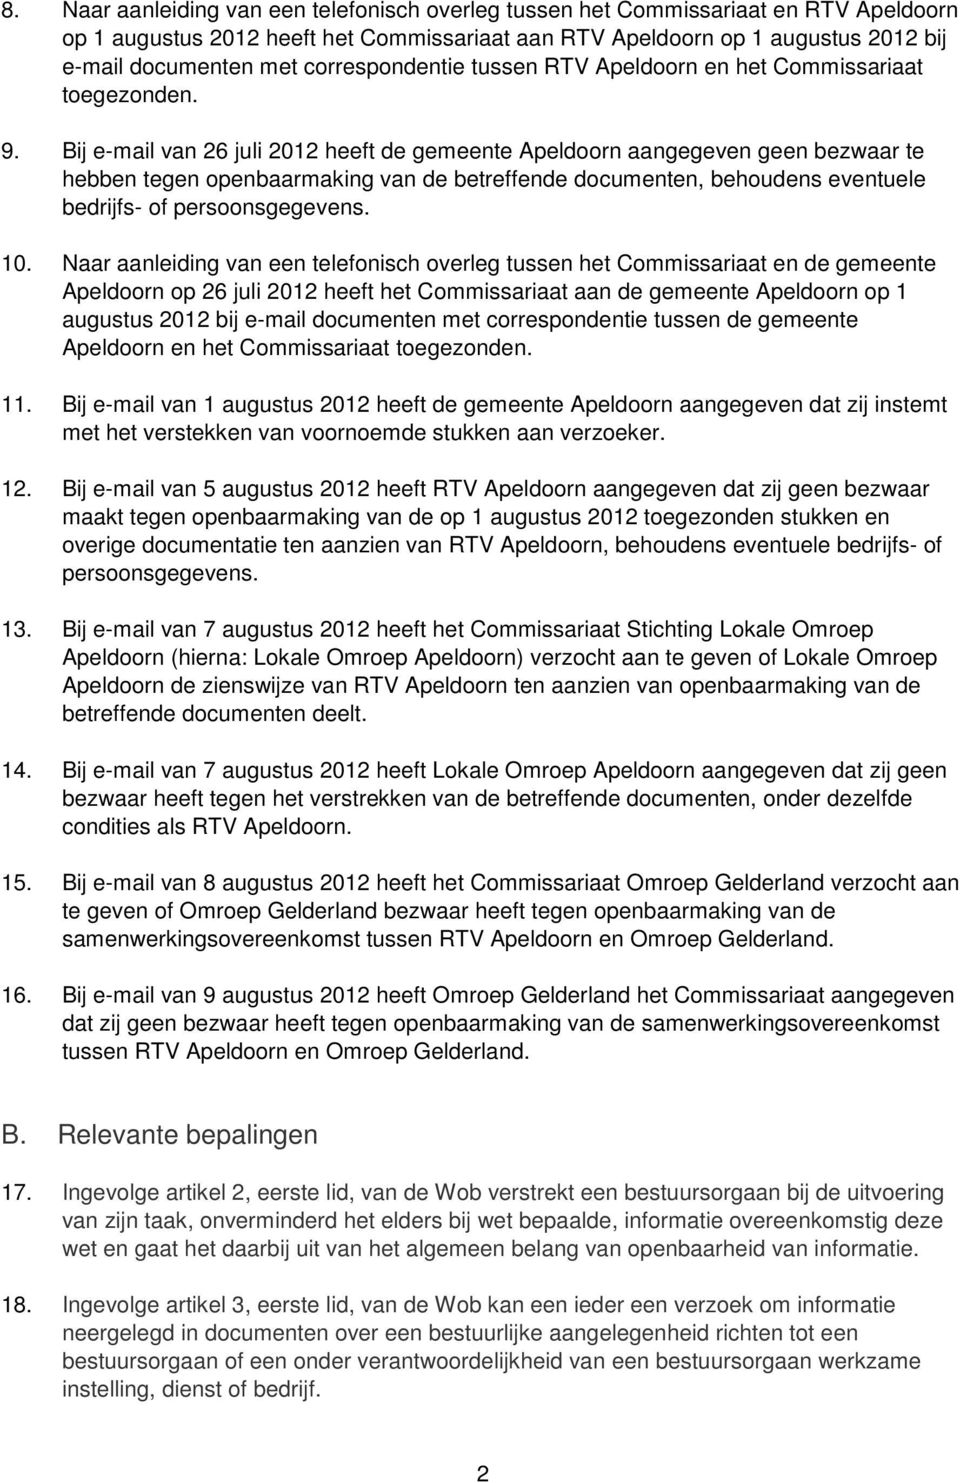 Bij e-mail van 26 juli 2012 heeft de gemeente Apeldoorn aangegeven geen bezwaar te hebben tegen openbaarmaking van de betreffende documenten, behoudens eventuele bedrijfs- of persoonsgegevens. 10.